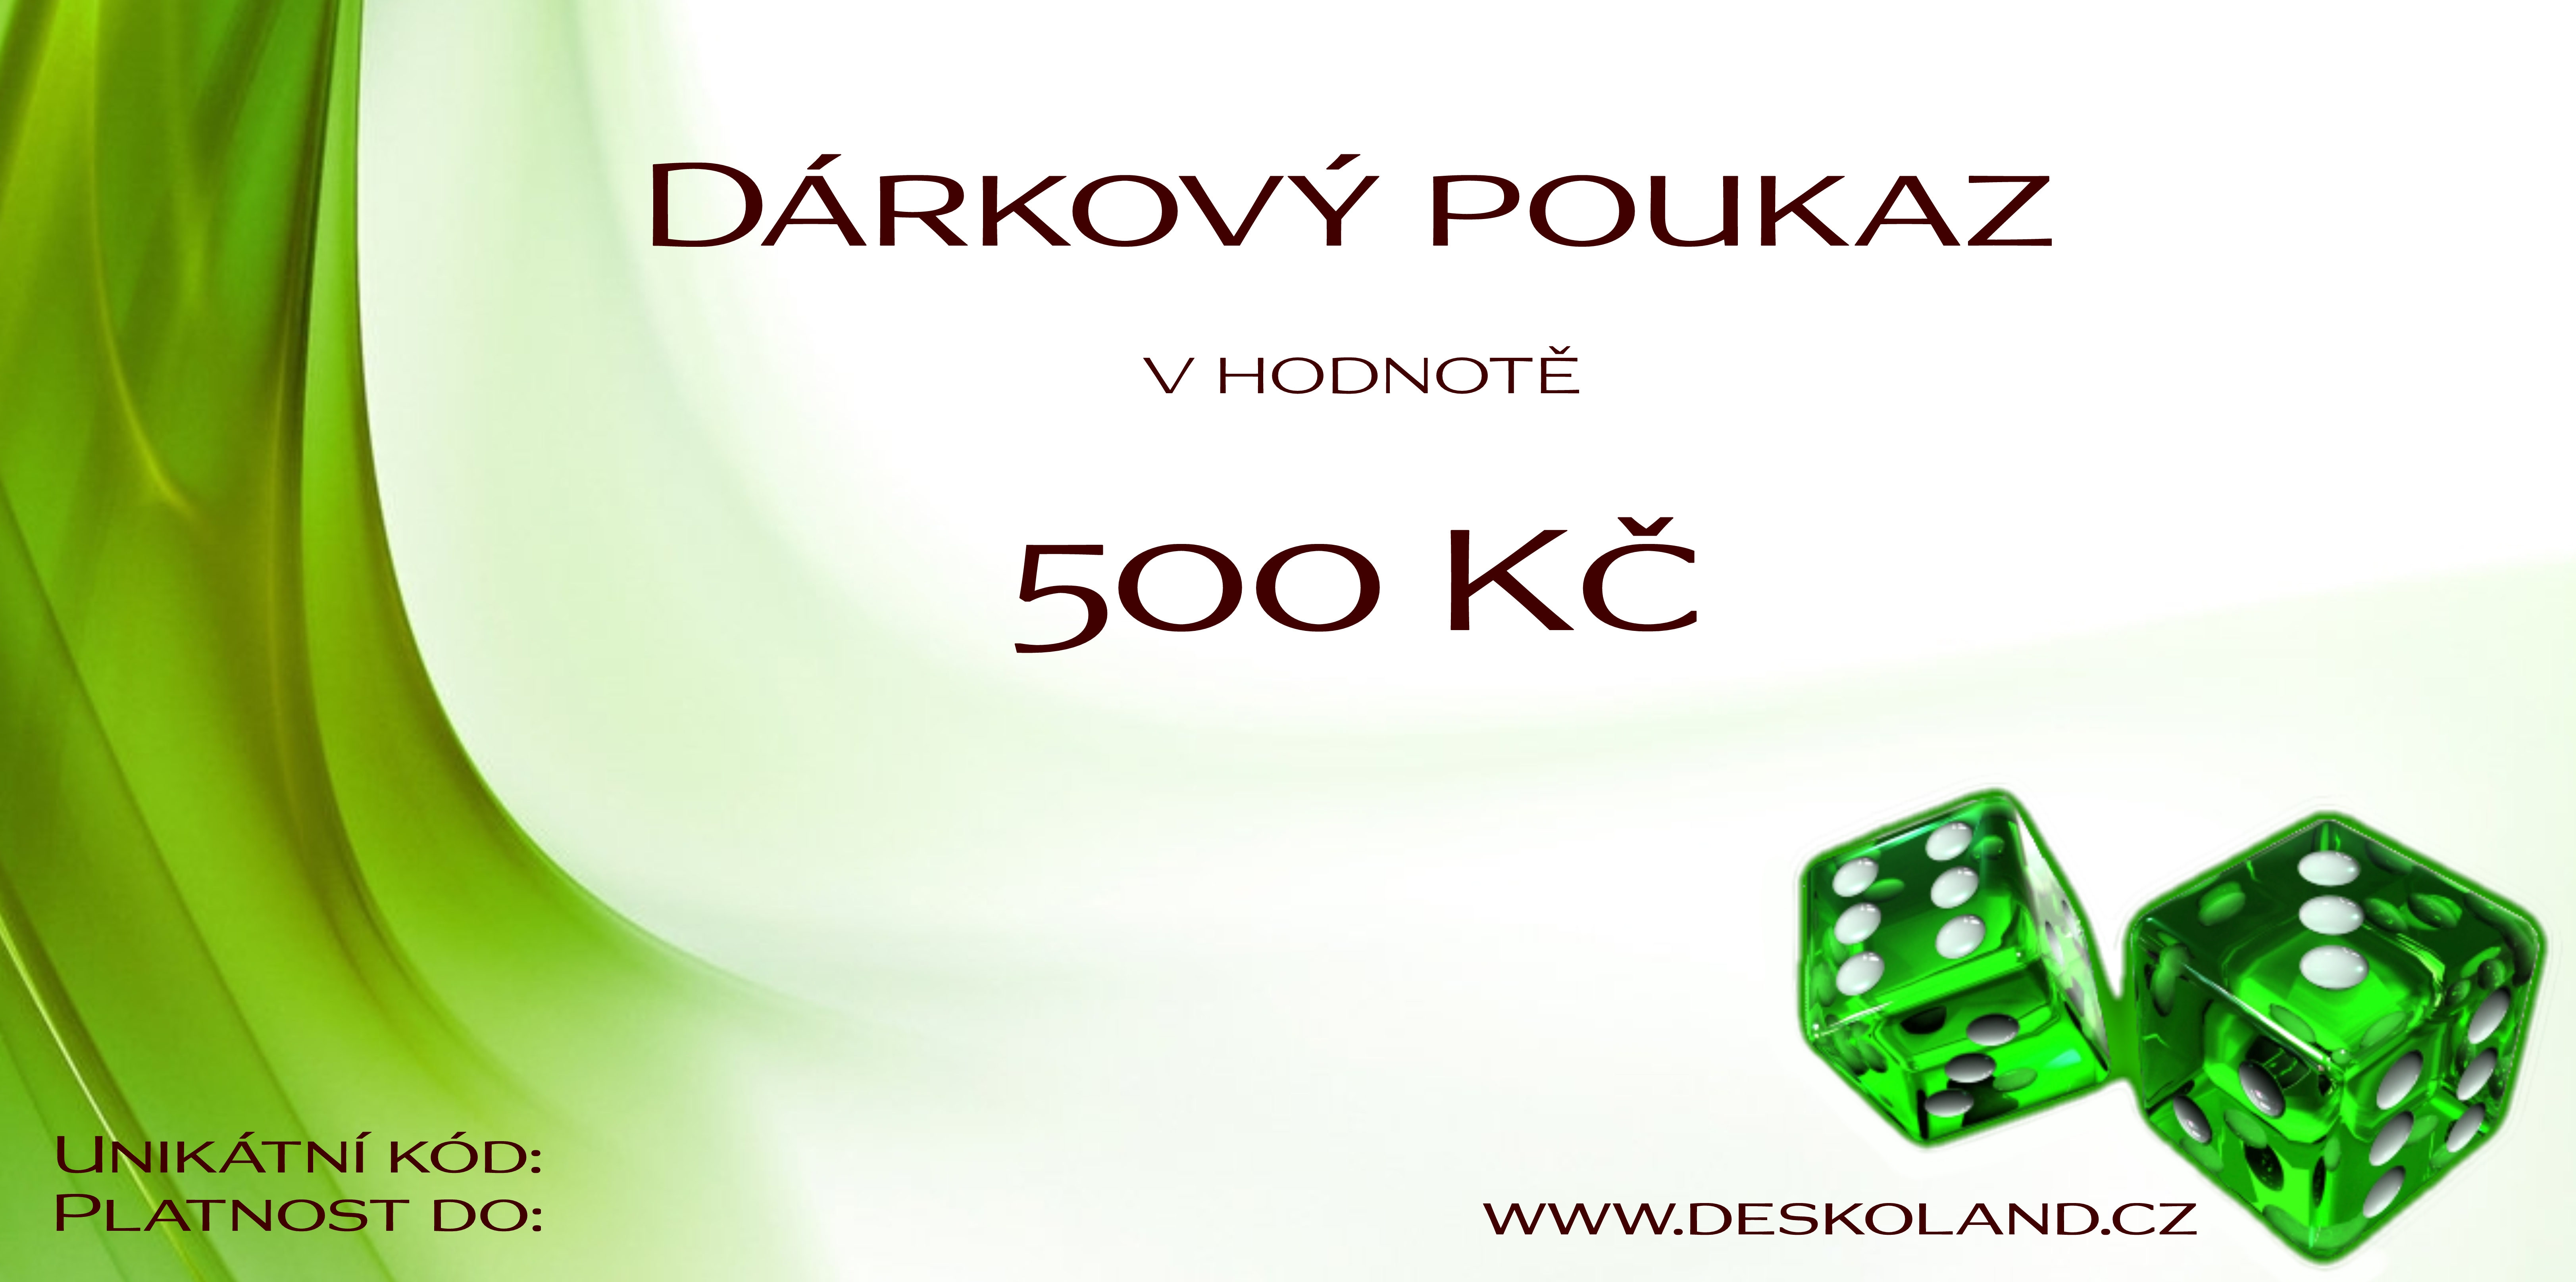 Dárkový poukaz 500 Kč na Deskoland.cz